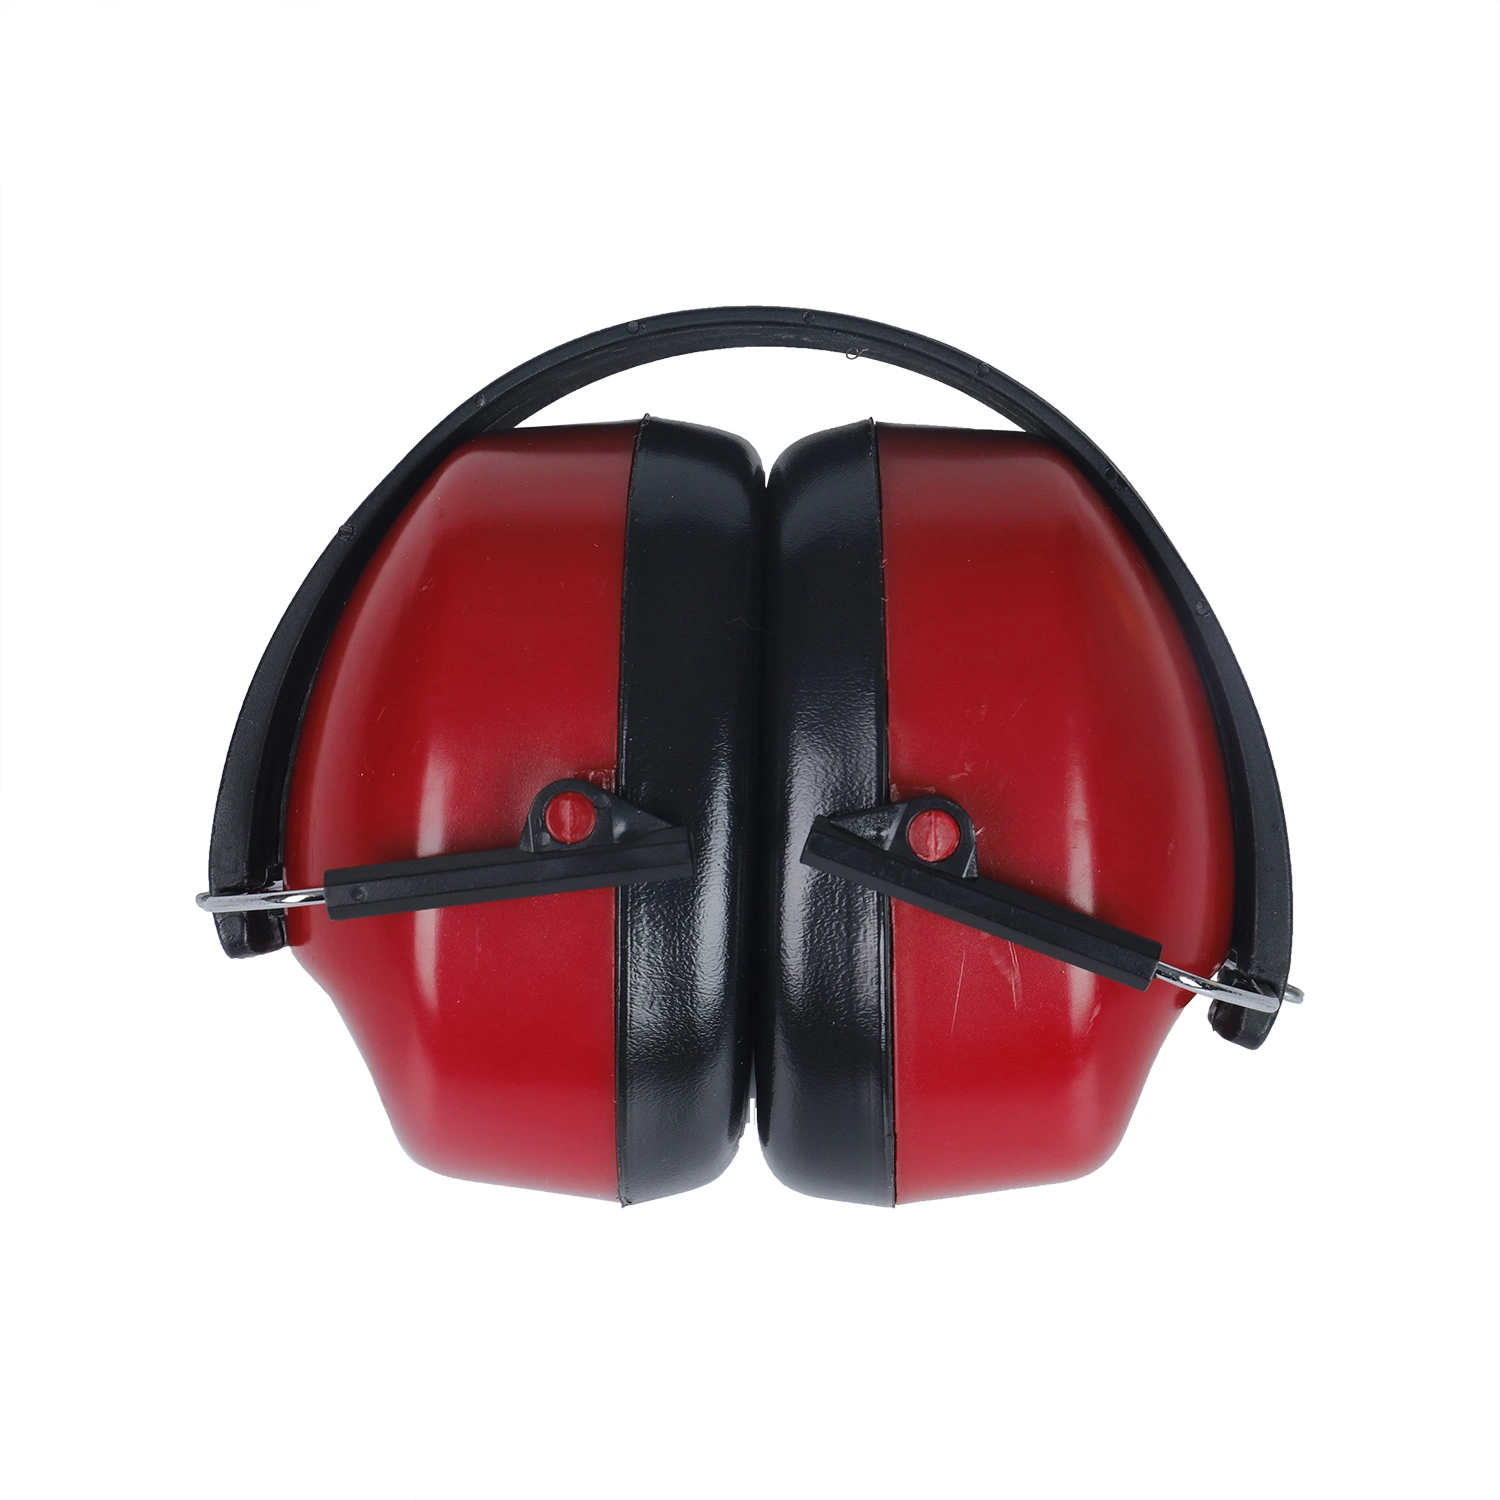 Casque antibruit protection auditive réduction du bruit acoustique (EY21)